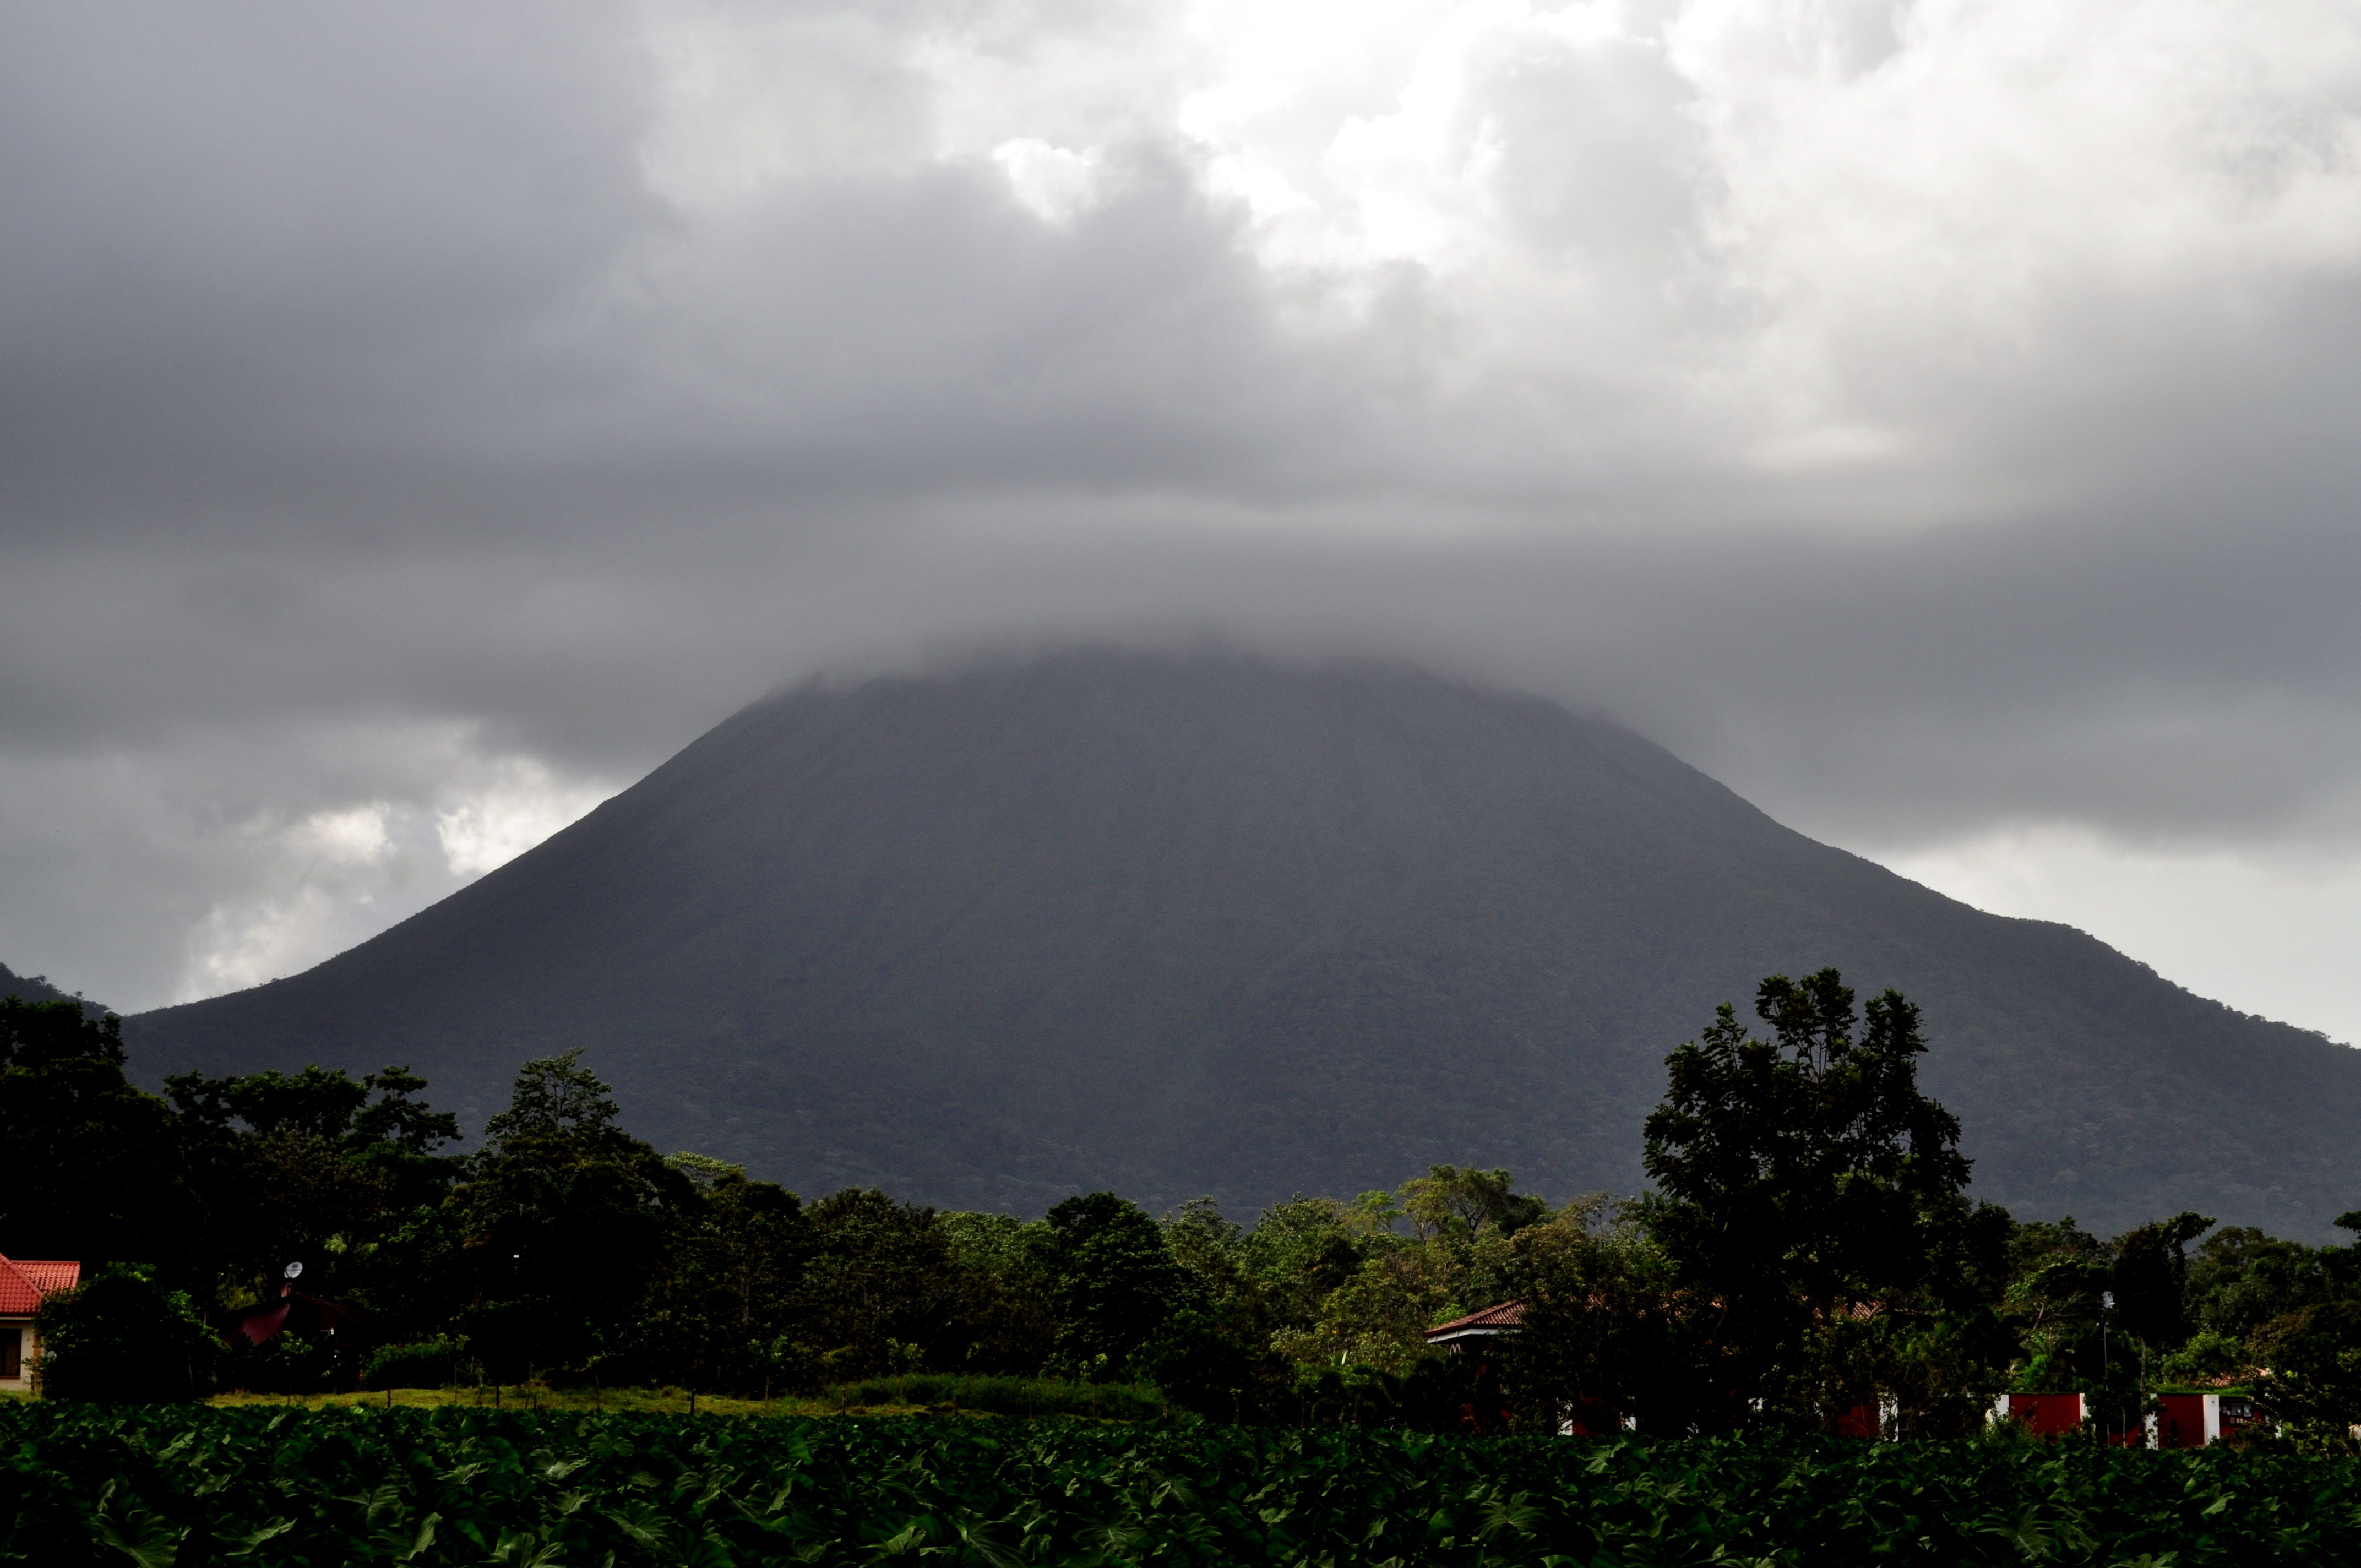 Le volcan Arenal dans les nuages